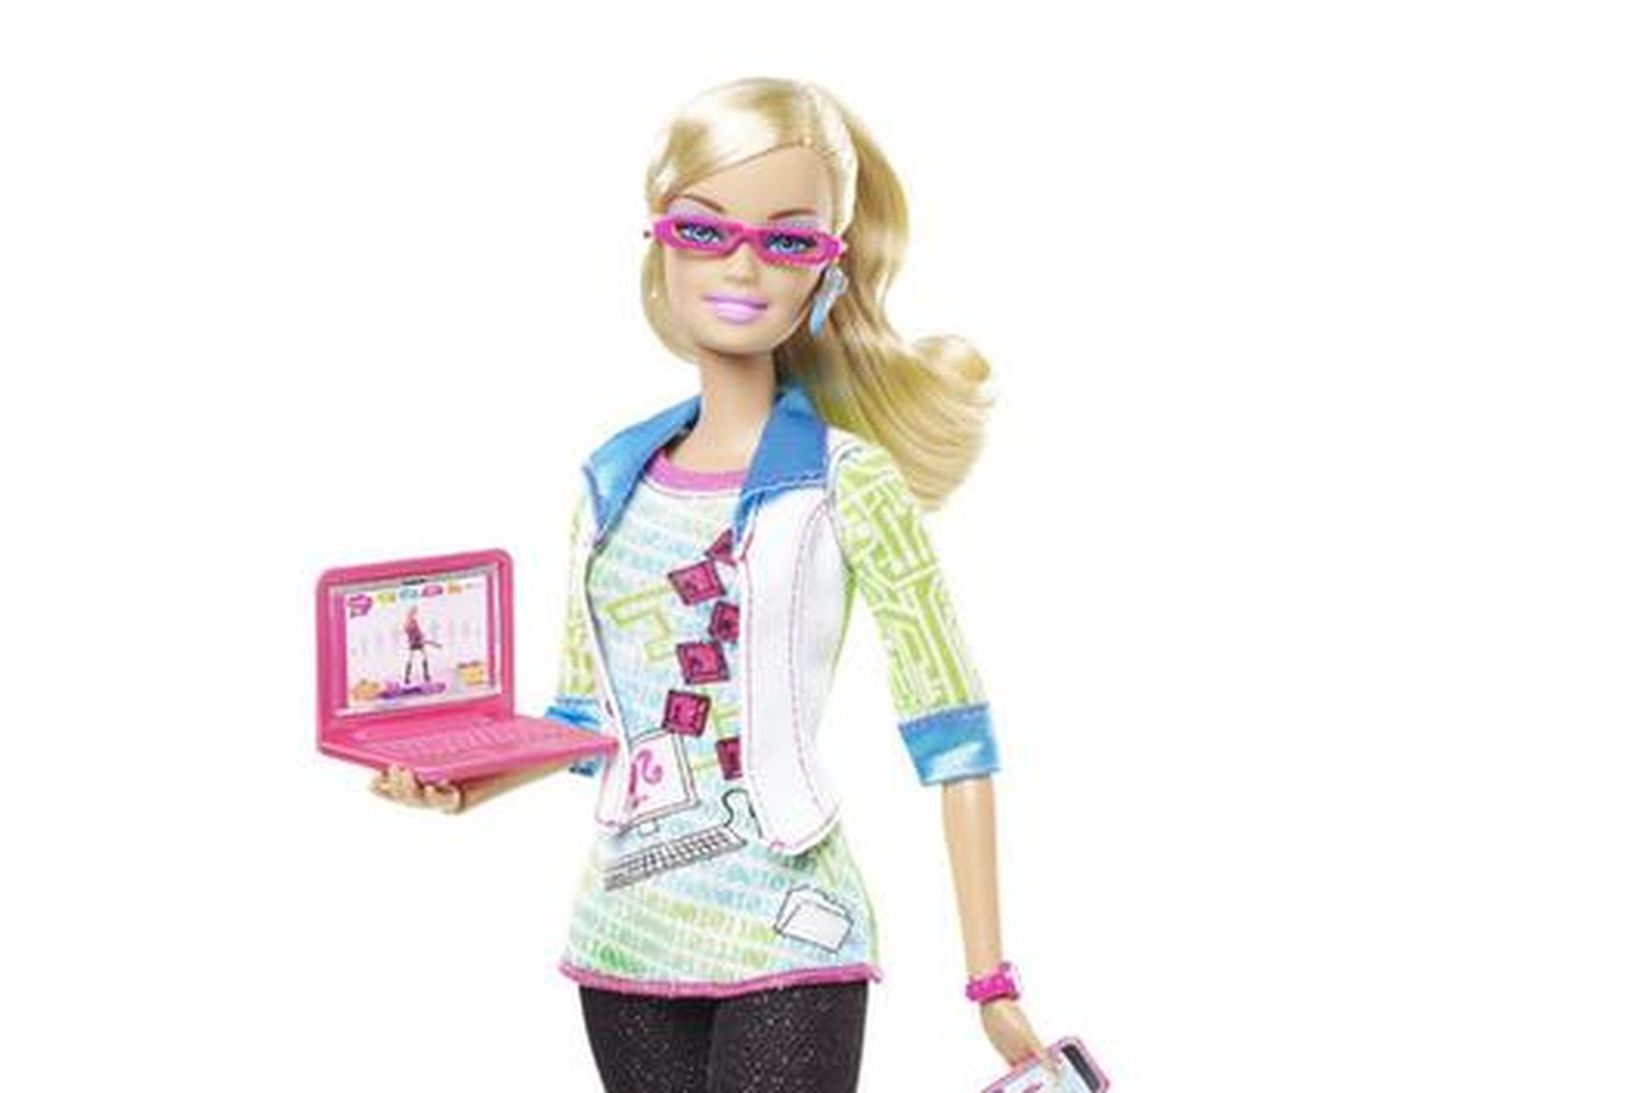 Tölvu-Barbie kunni ekki á tölvur.